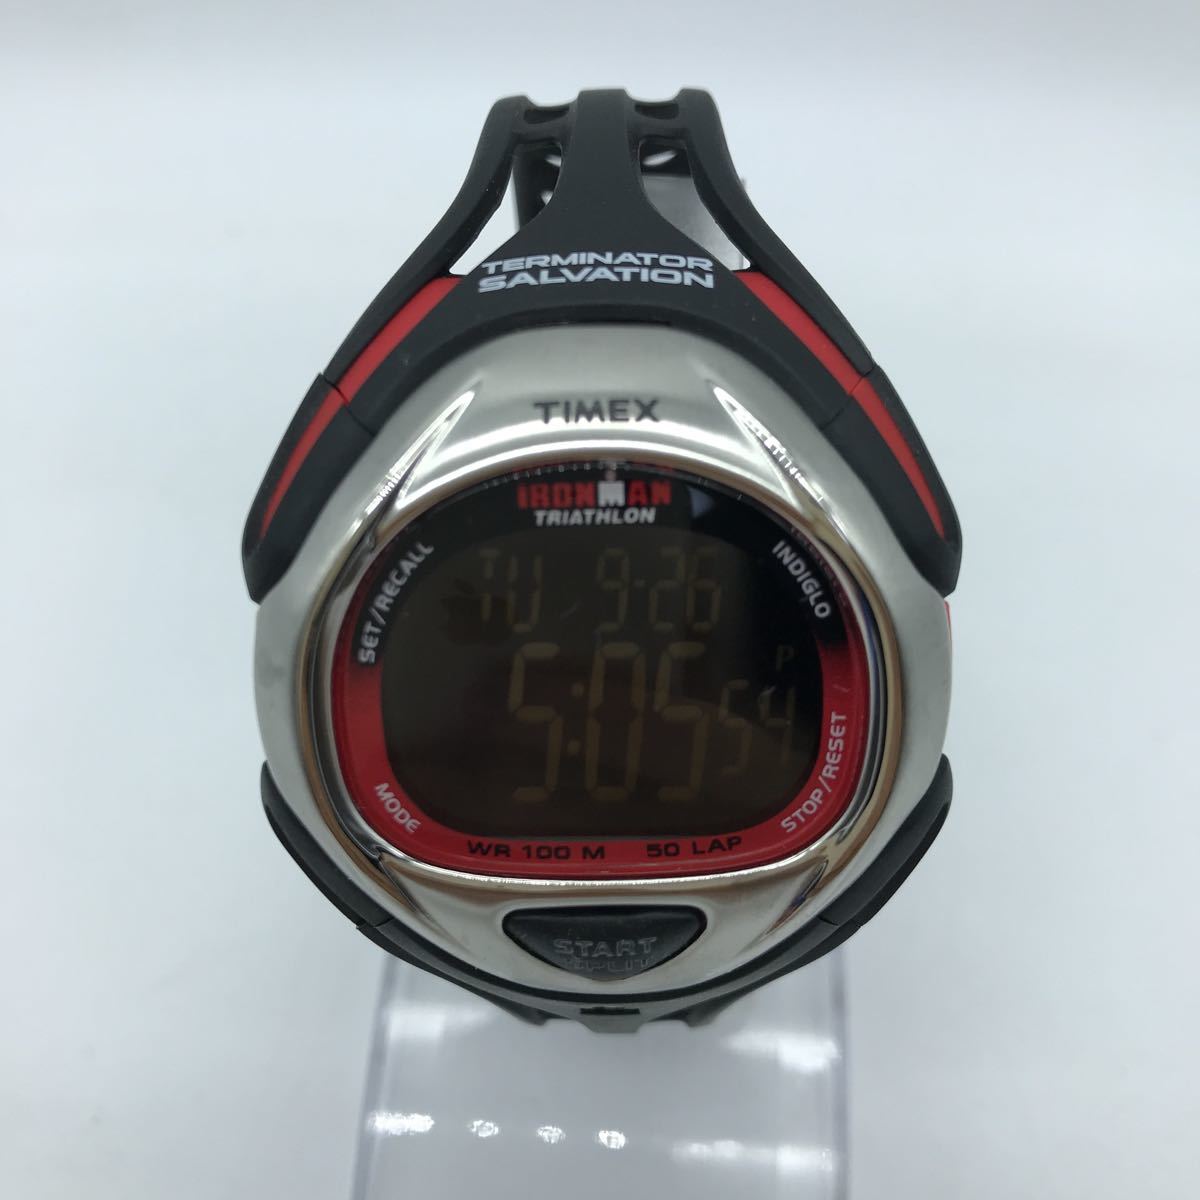 TIMEX タイメックス TERMINATOR SALVATION MODEL Limited edition デジタル 腕時計 ターミネーター サルベーション 限定モデル T92630_画像1